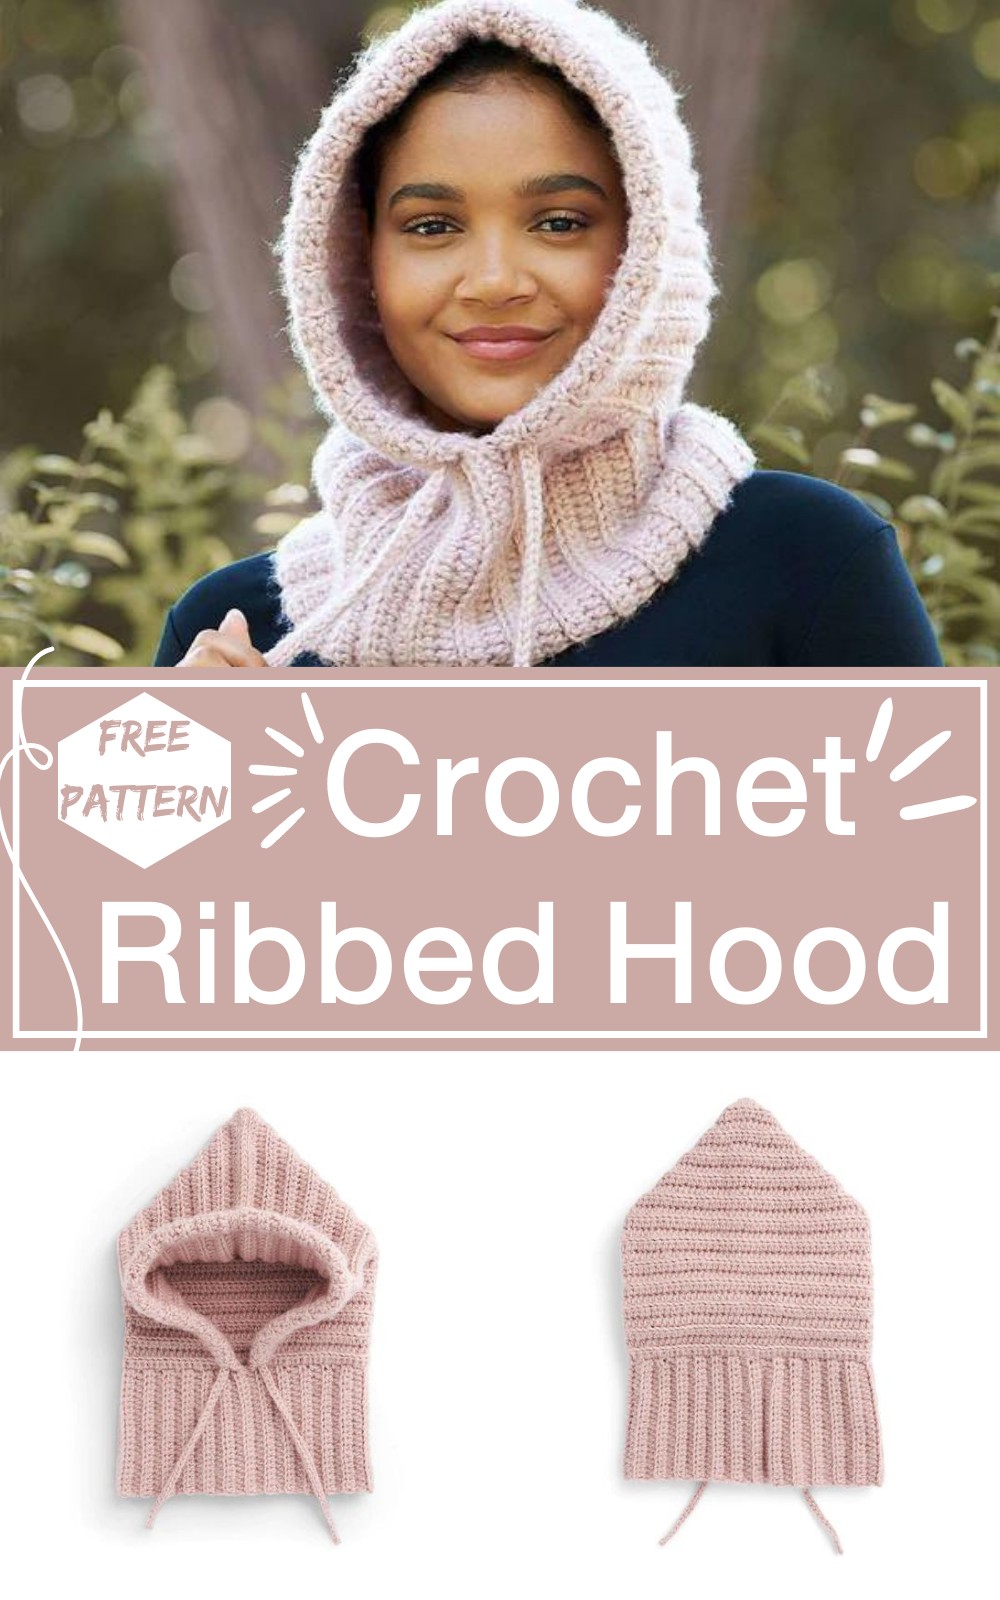 Crochet Ribbed Hood